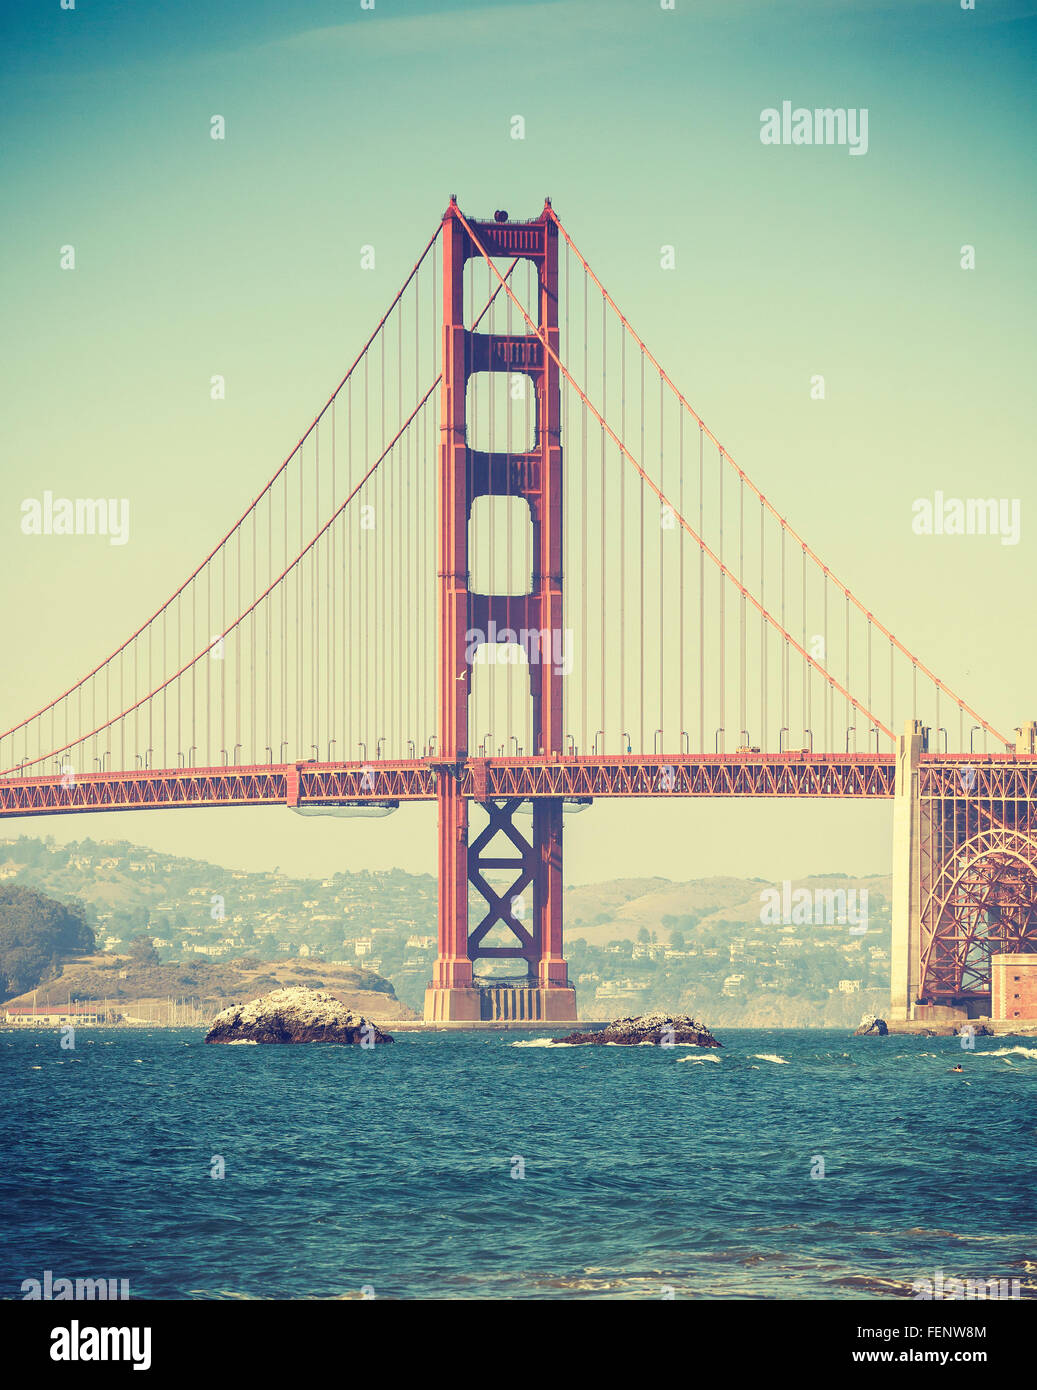 Vieux film retro style Golden Gate Bridge à San Francisco, USA. Banque D'Images